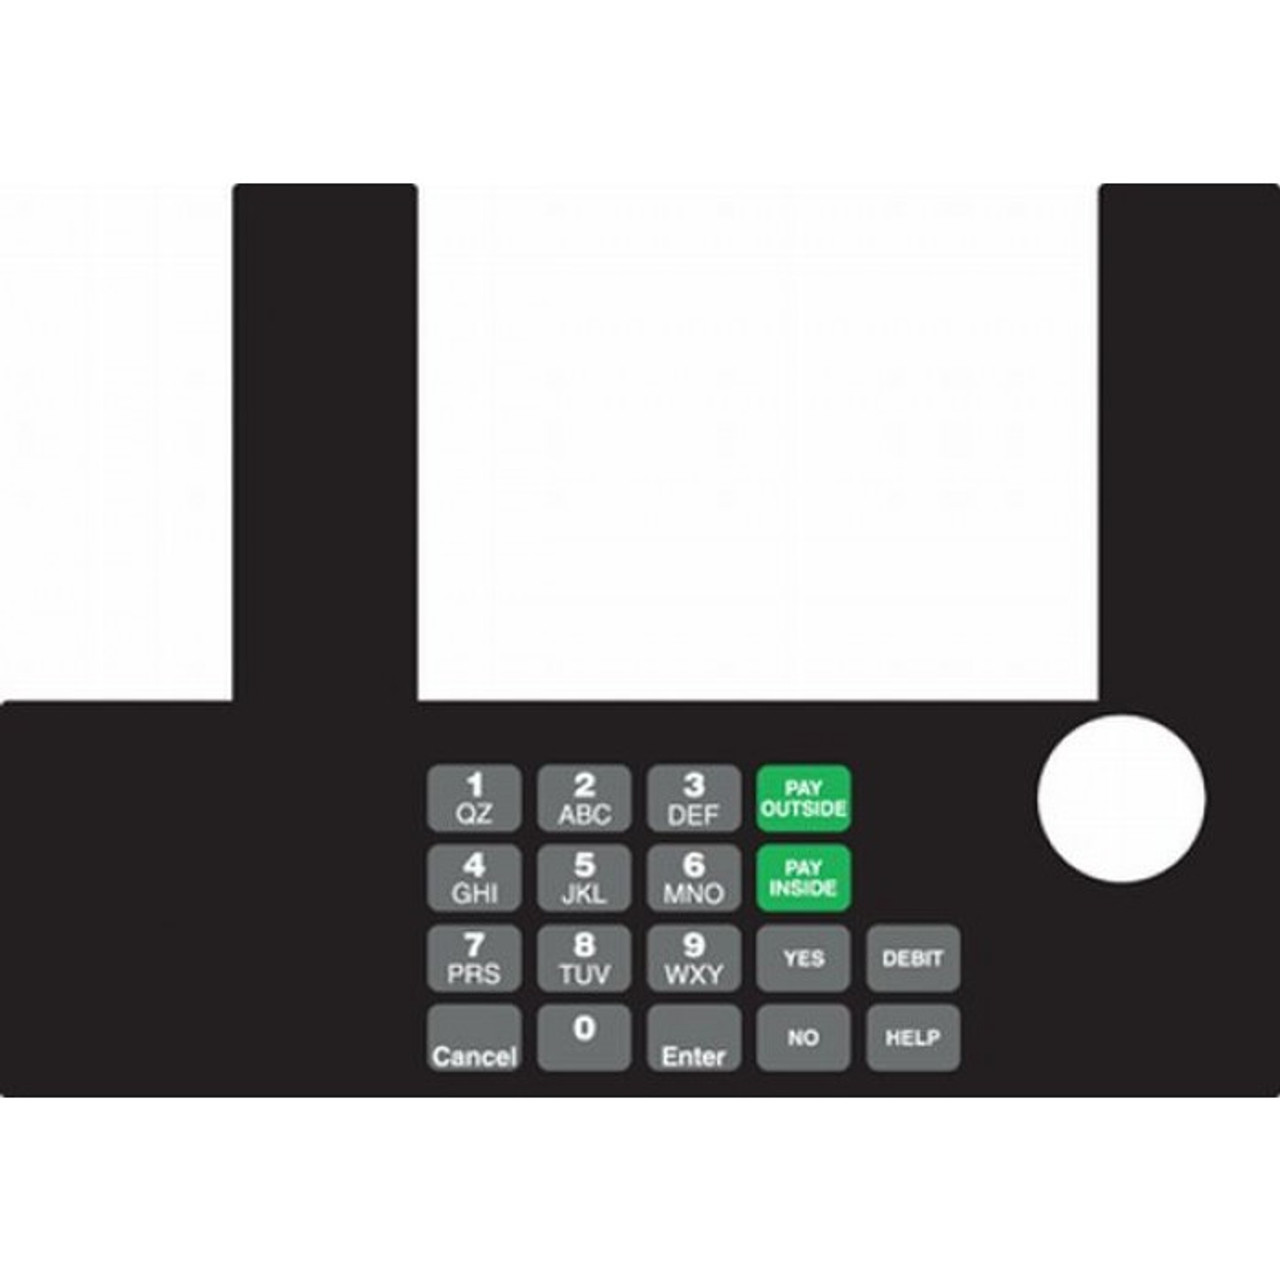 T50038-1048 - Infoscreen Keypad Overlay Marathon